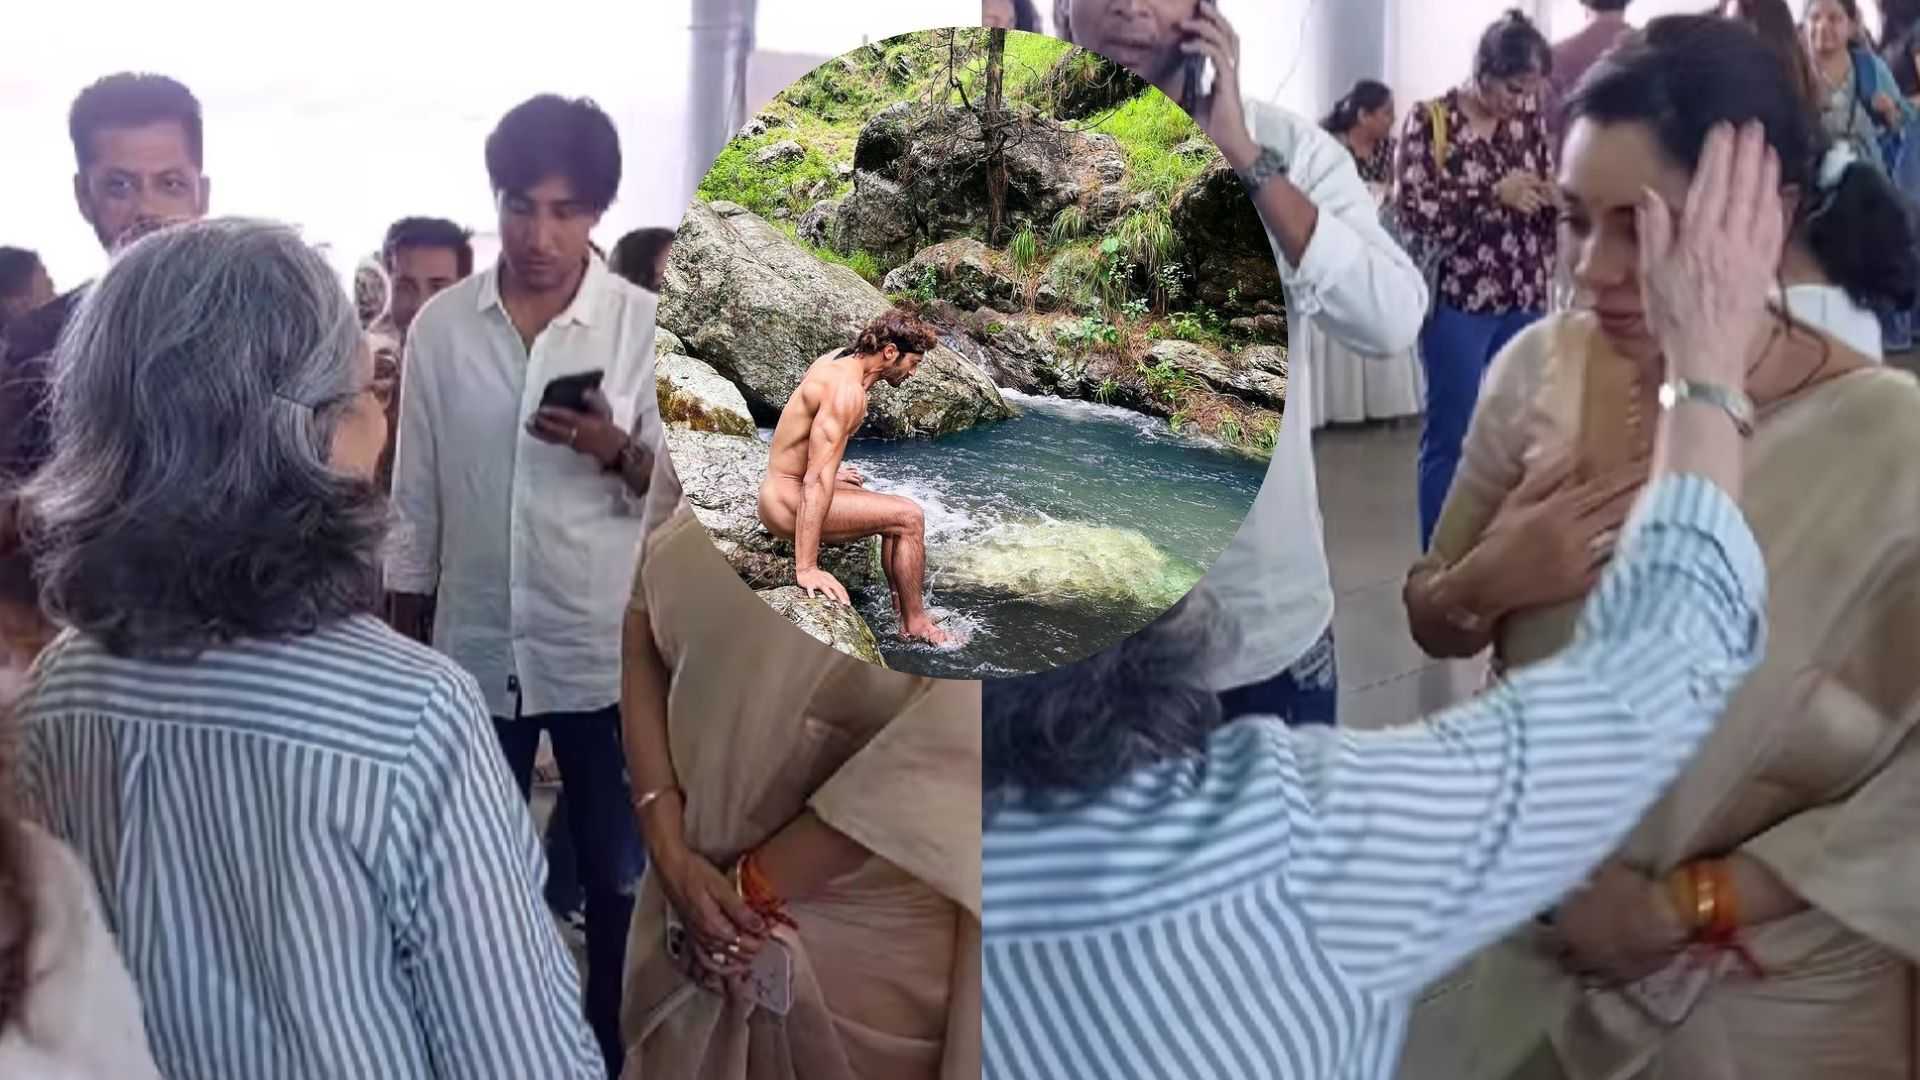 अनुपमा स्टार रुपाली गांगुली ने शर्मिला टैगोर के पैर छू कर लिया आशीर्वाद, वायरल हुआ वीडियो